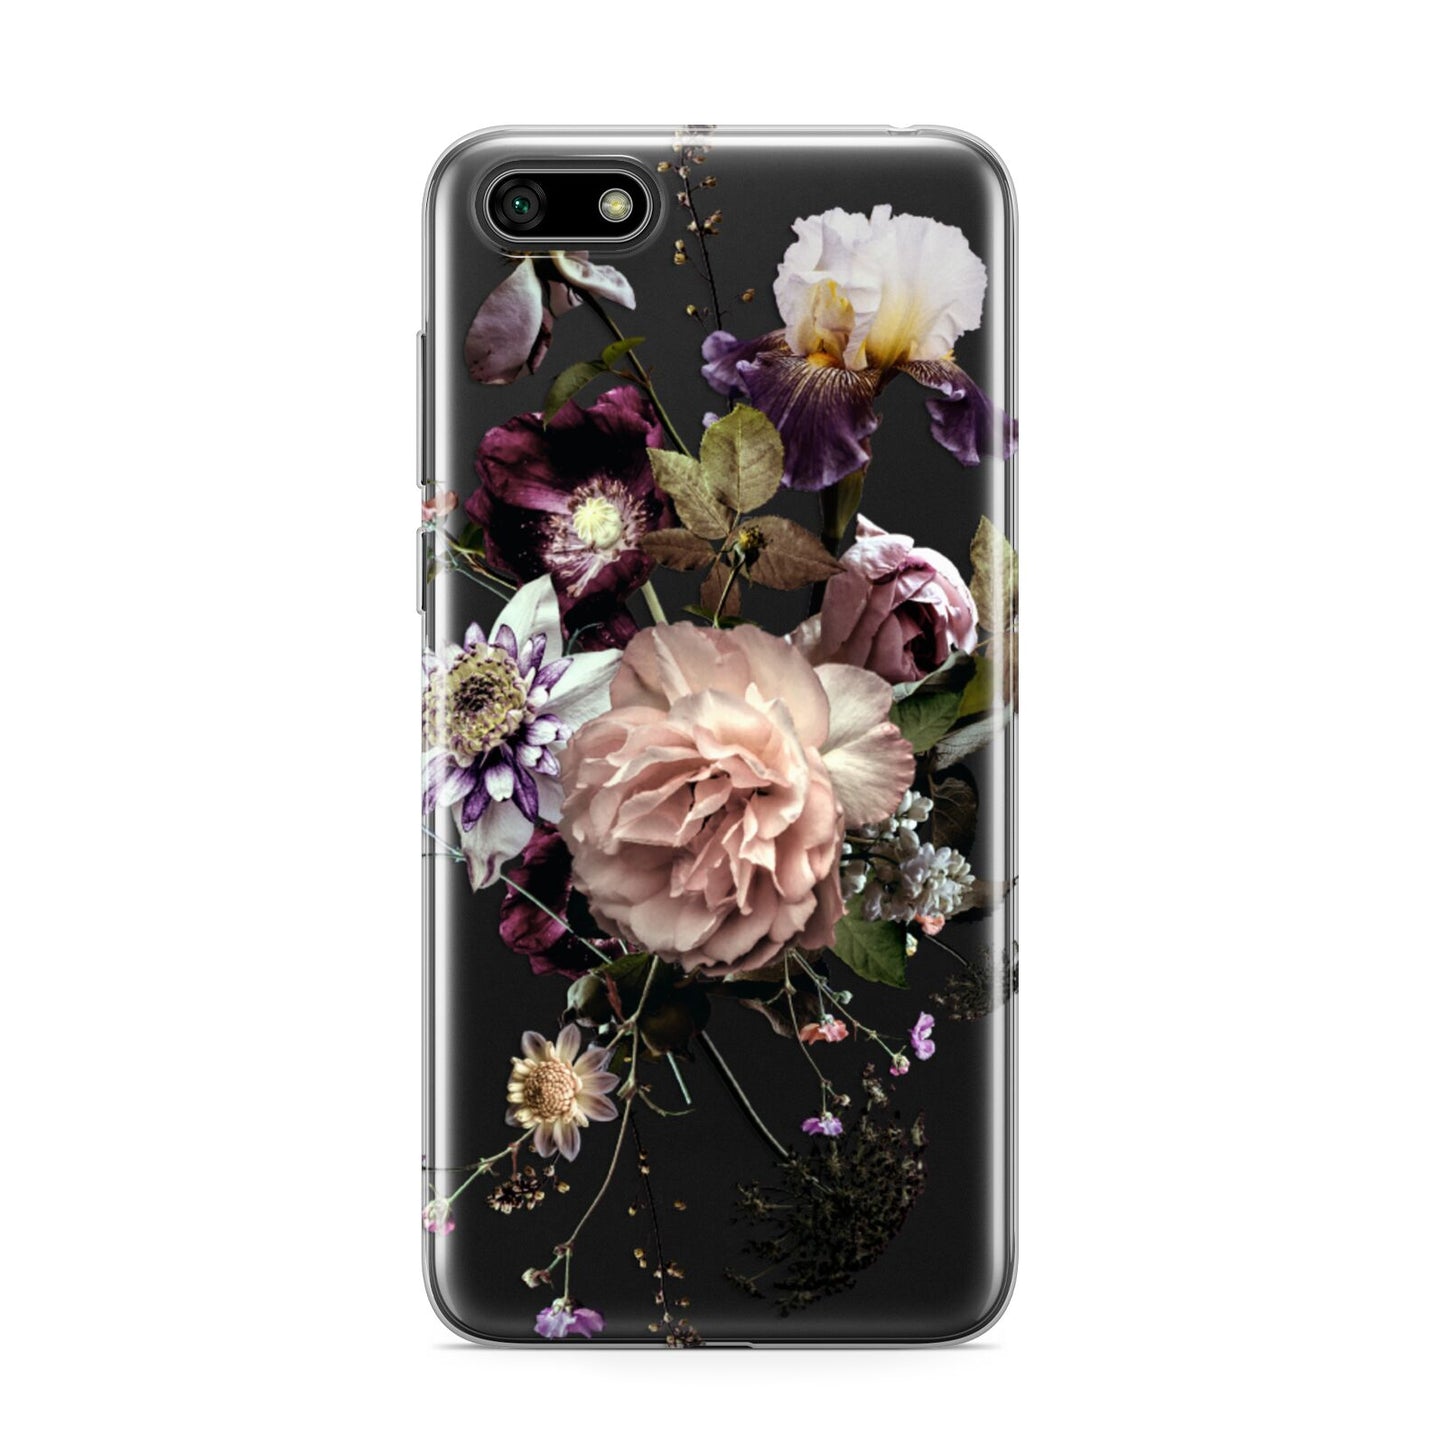 Vintage Flowers Huawei Y5 Prime 2018 Phone Case